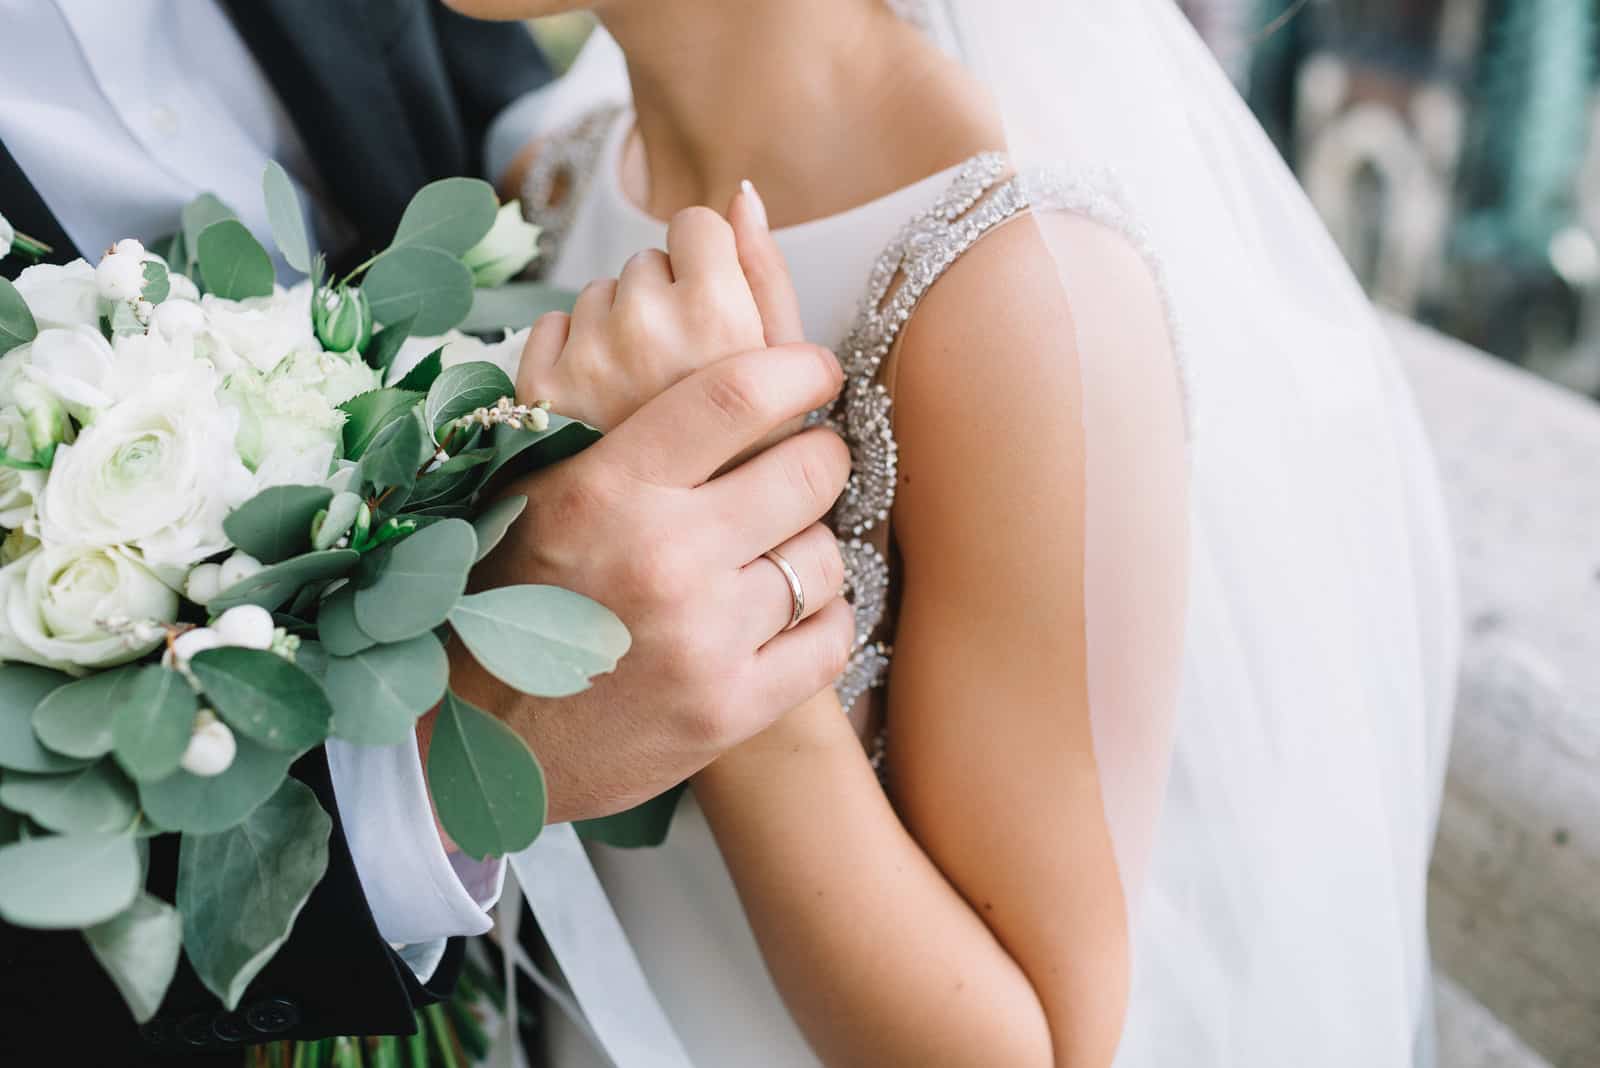 Die Hand des Bräutigams hält die Braut zärtlich